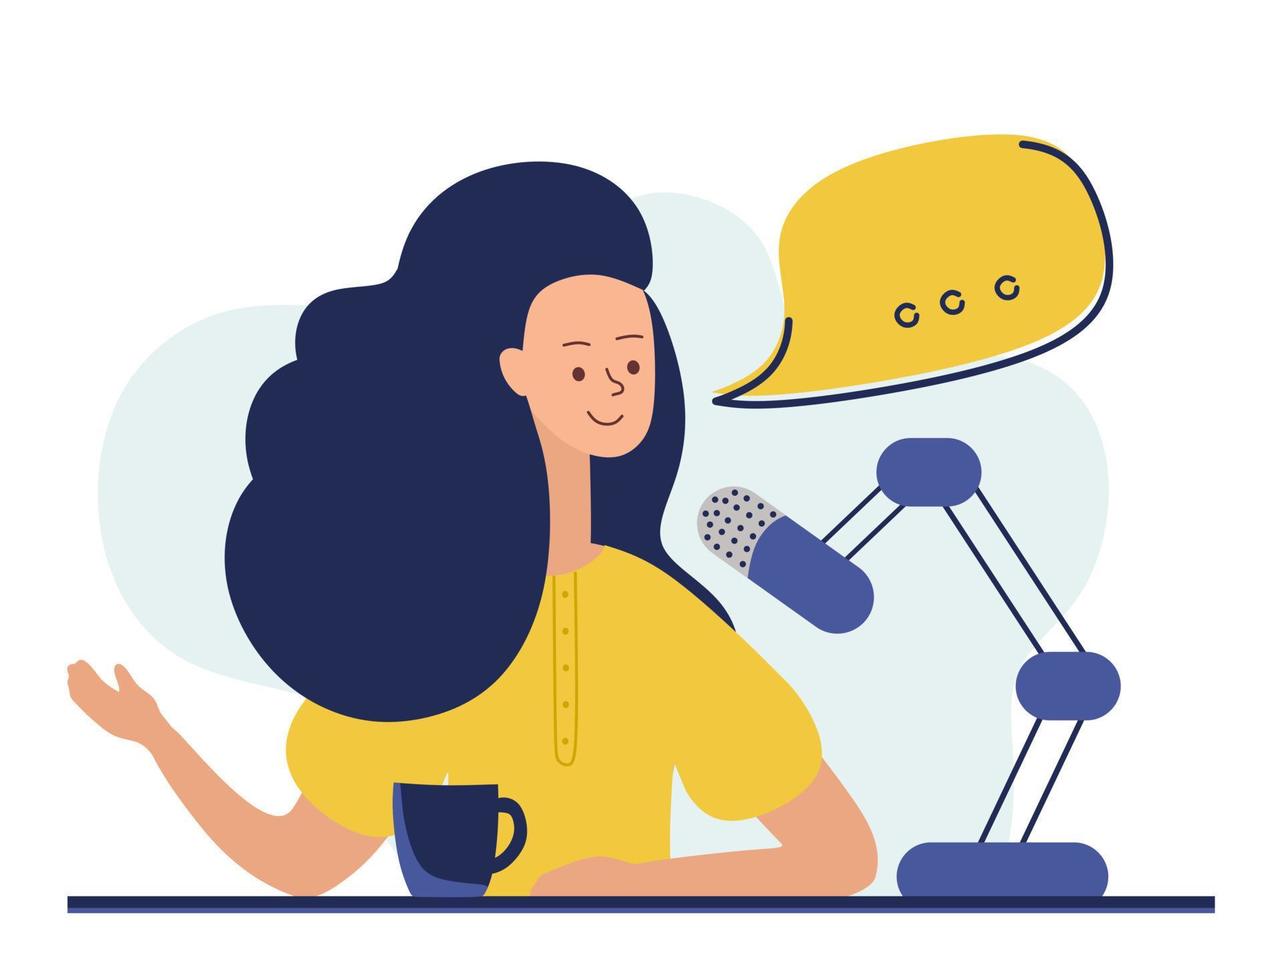 conceito de podcast. uma ilustração sobre o podcast. uma garota falando ao microfone e sentada em uma mesa. vetor plano em um estilo elegante.